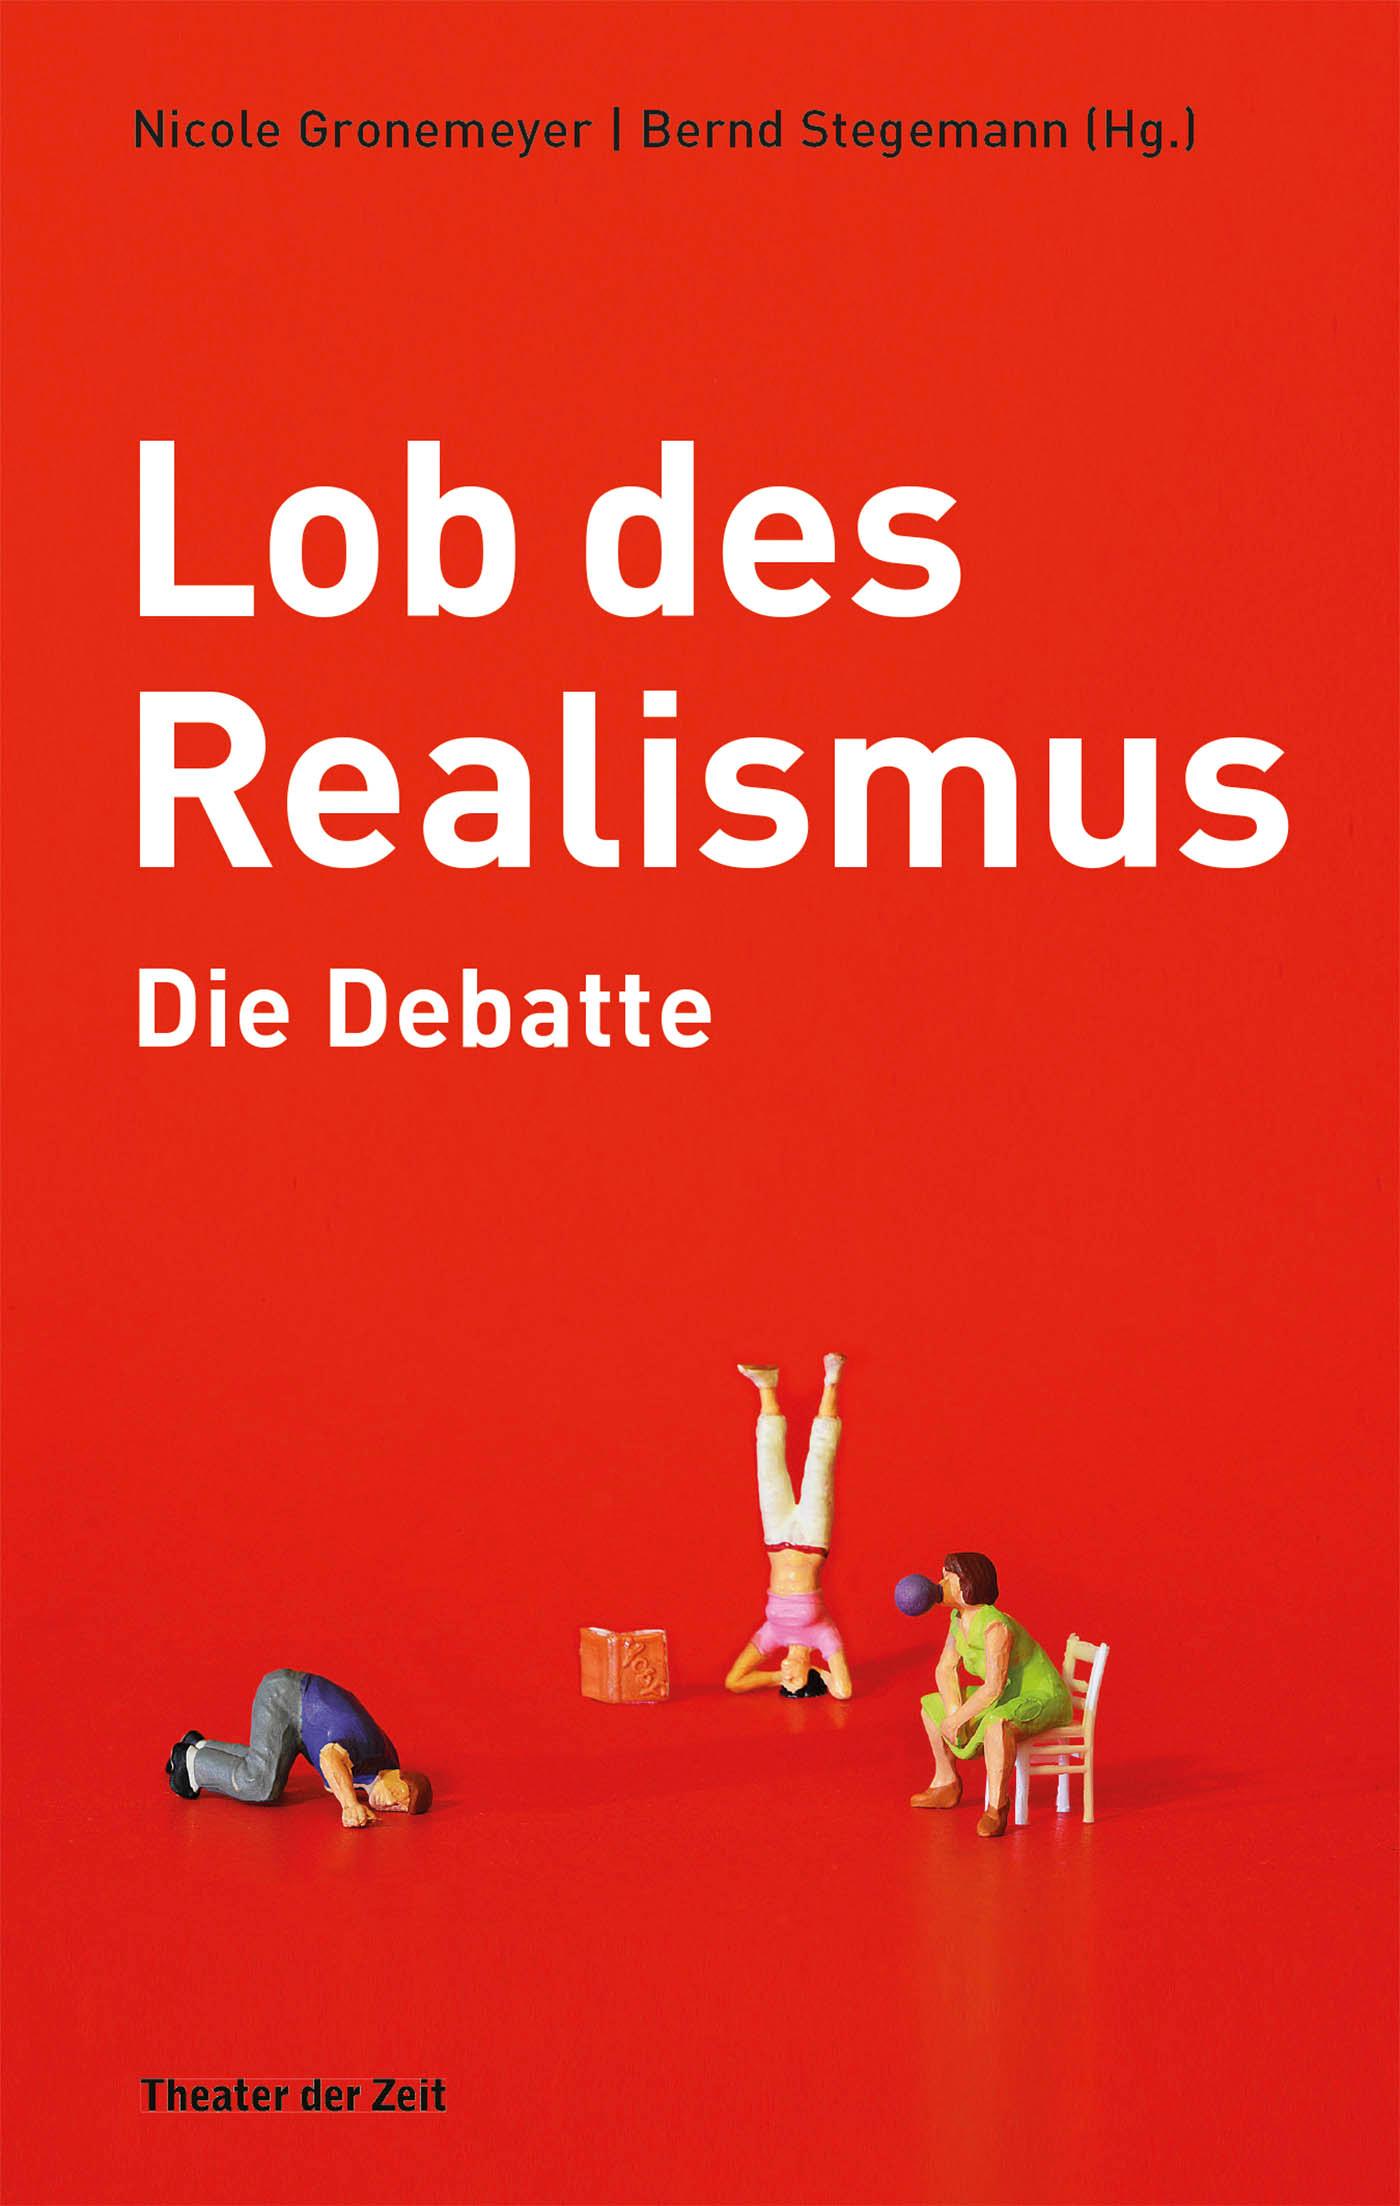 "Lob des Realismus – Die Debatte"